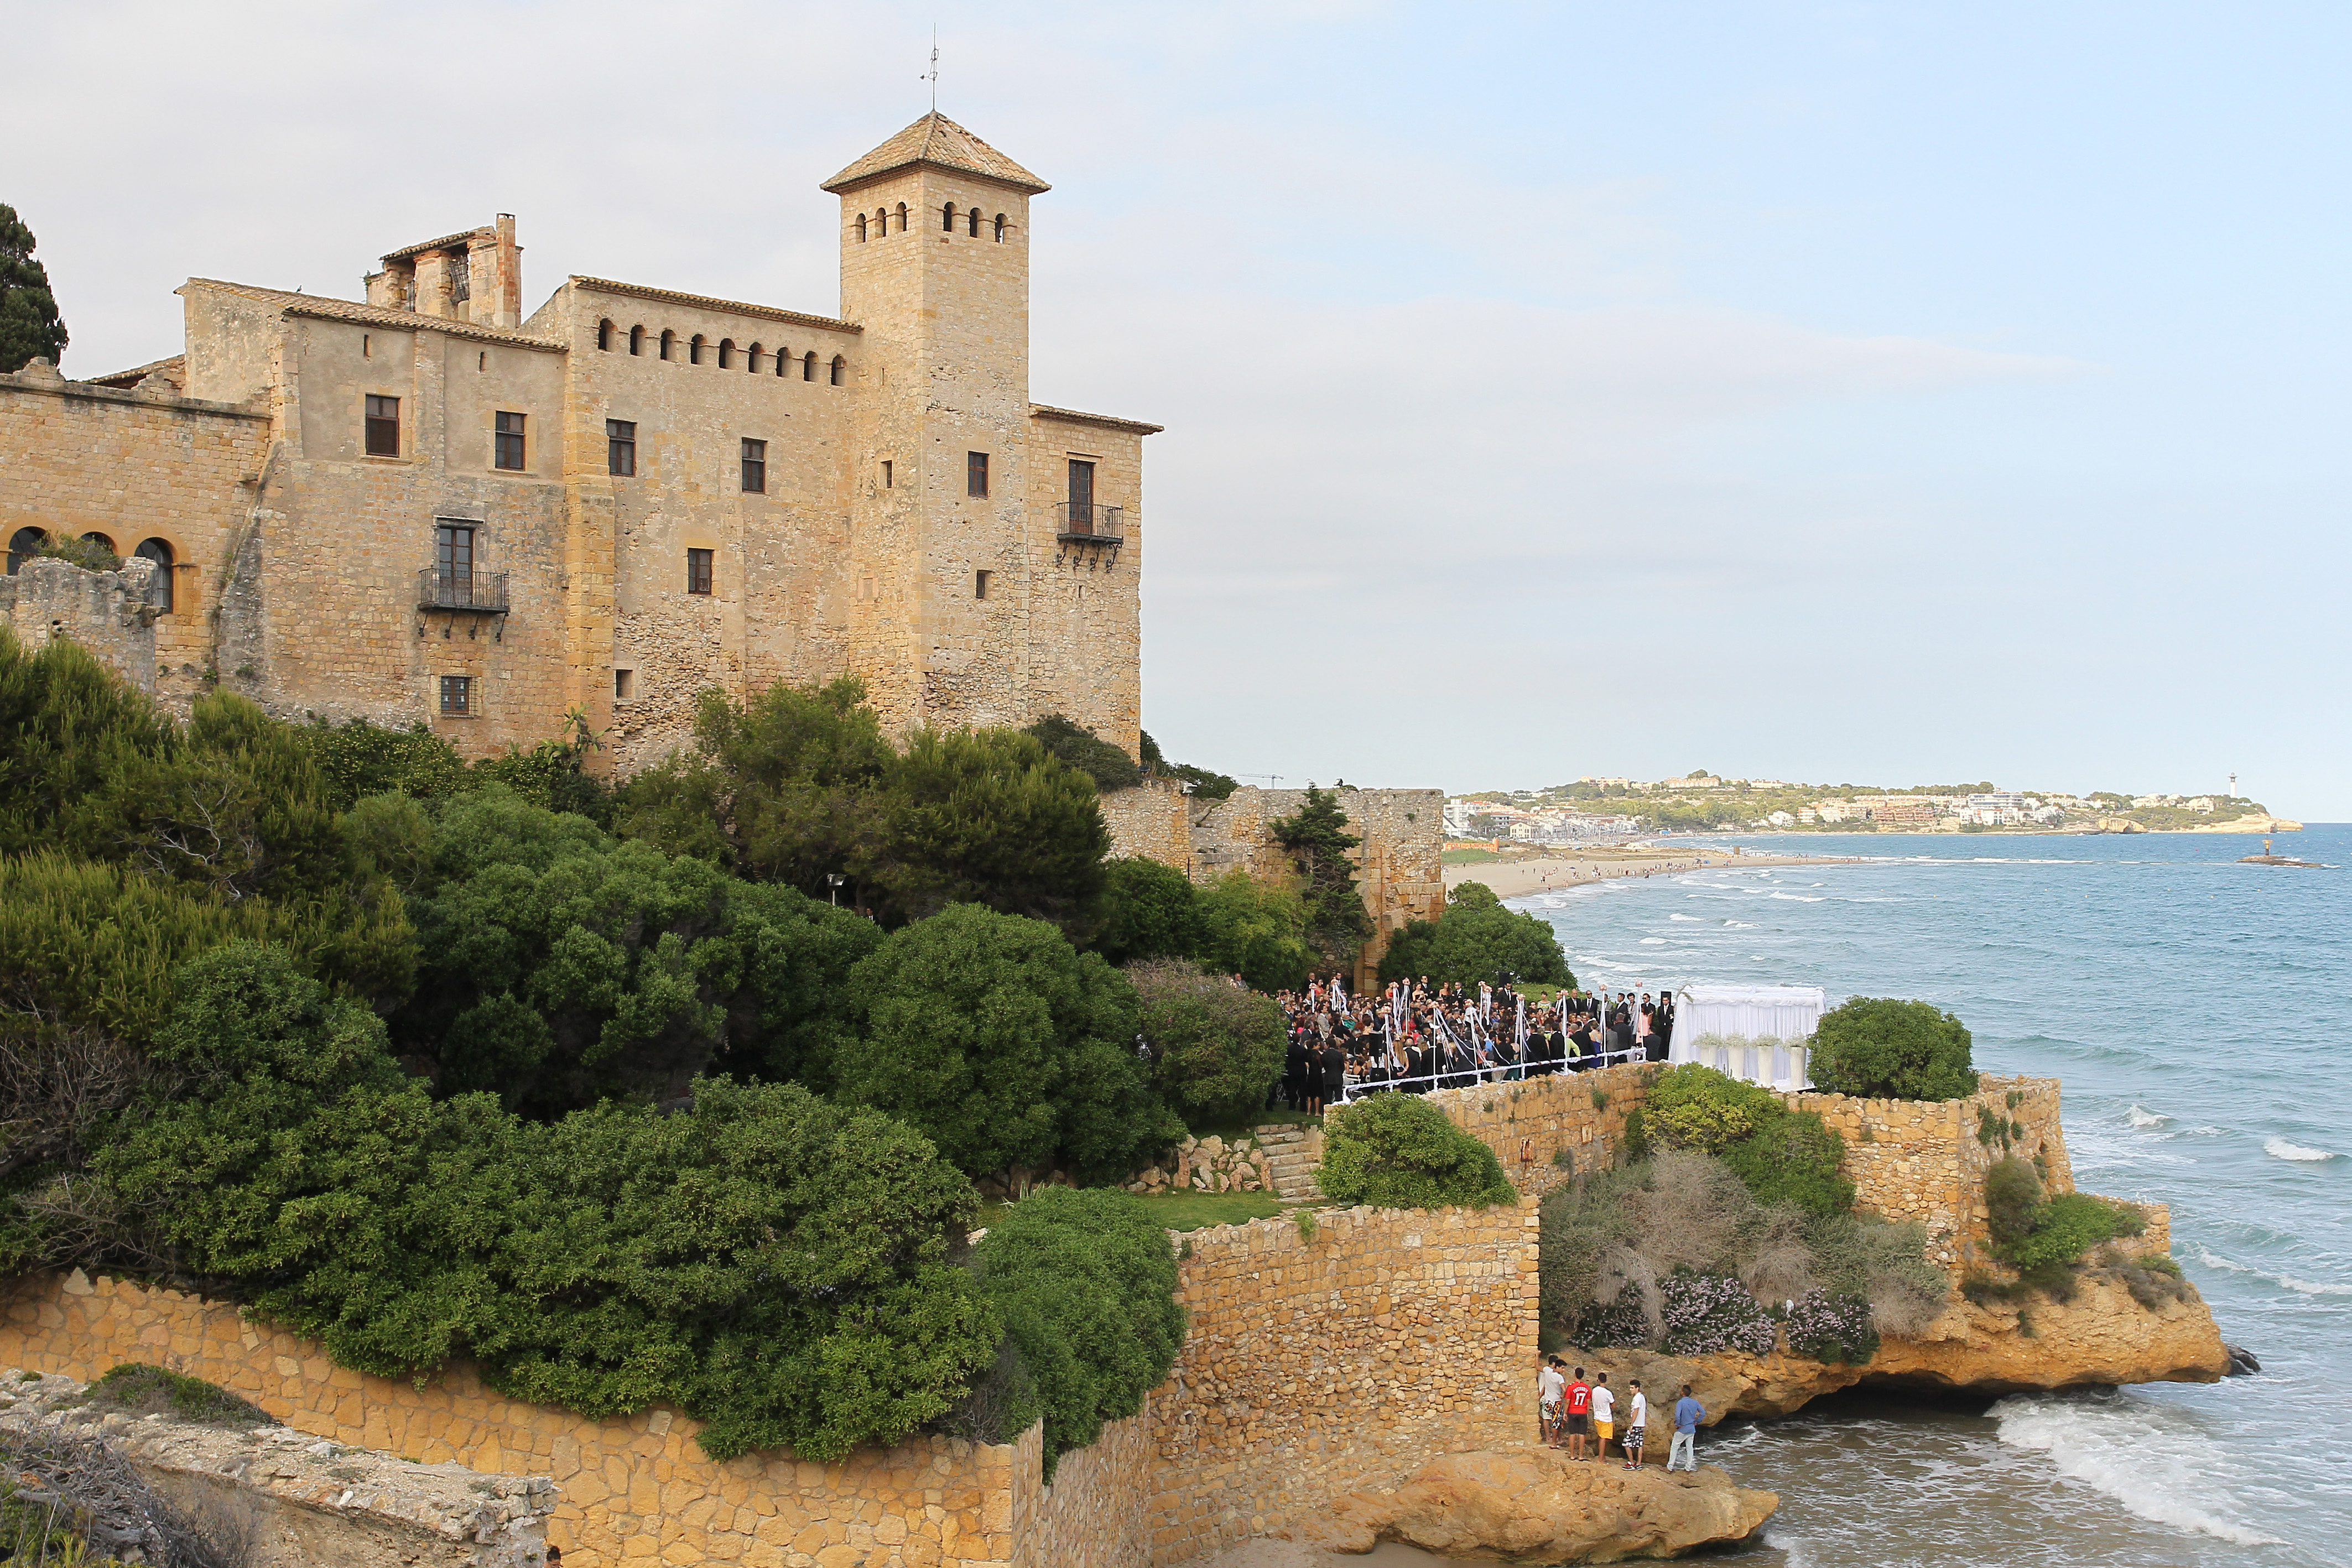 Bröllopet hölls i ett gammalt slott i Tarragona, Spanien.